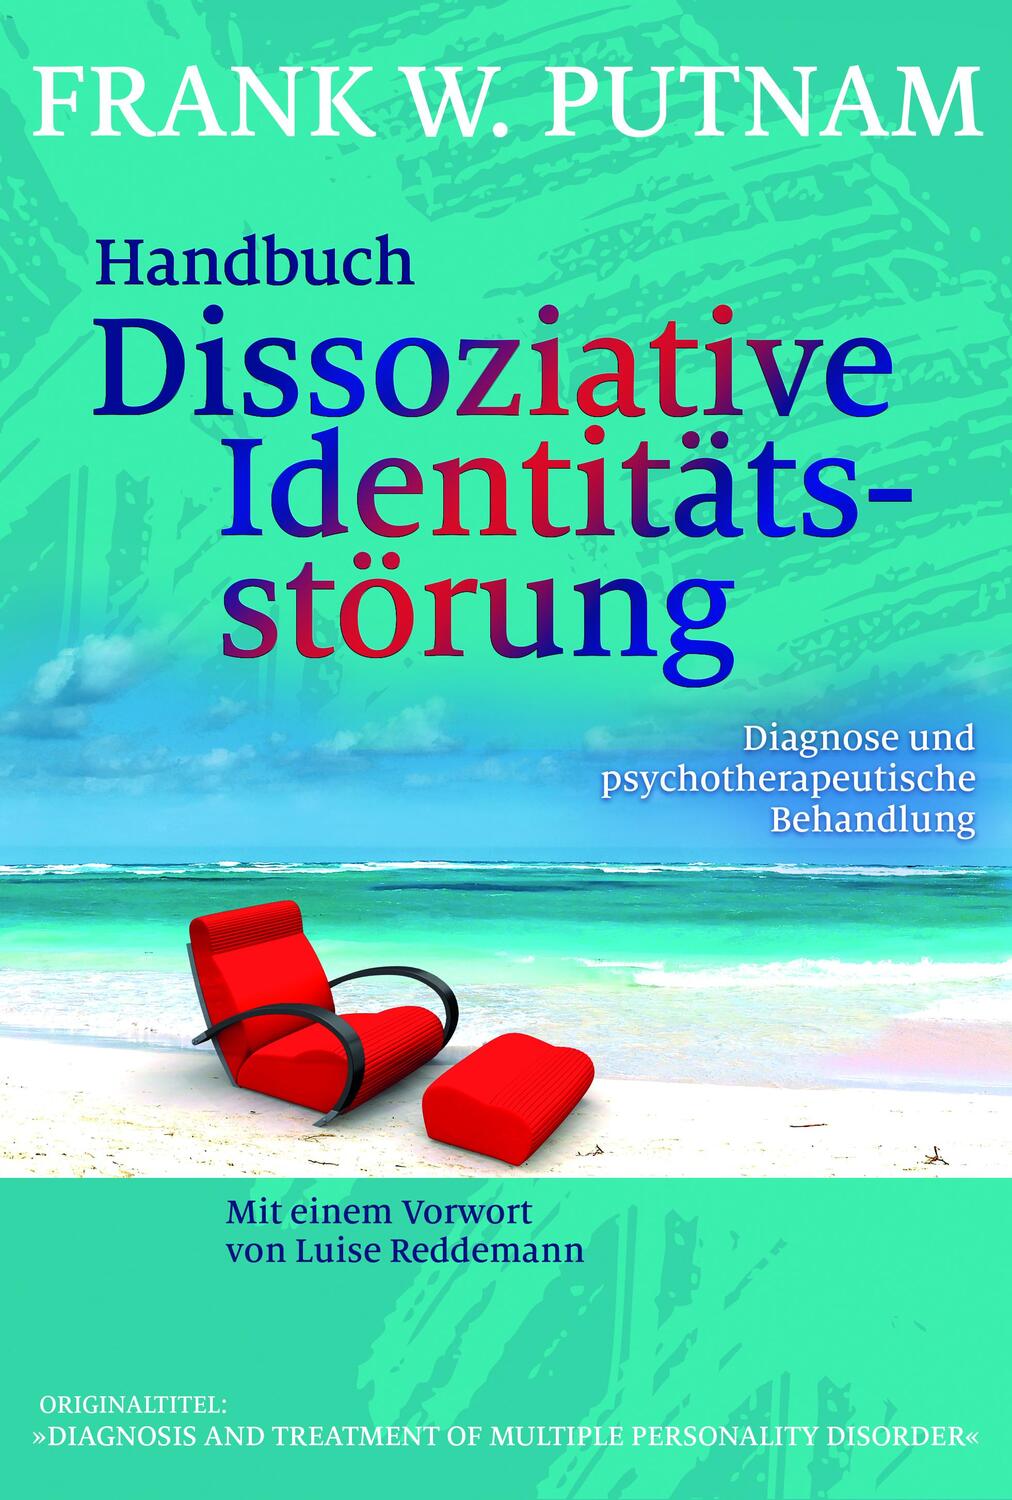 Handbuch Dissoziative Identitätsstörung - Putnam, Frank W.